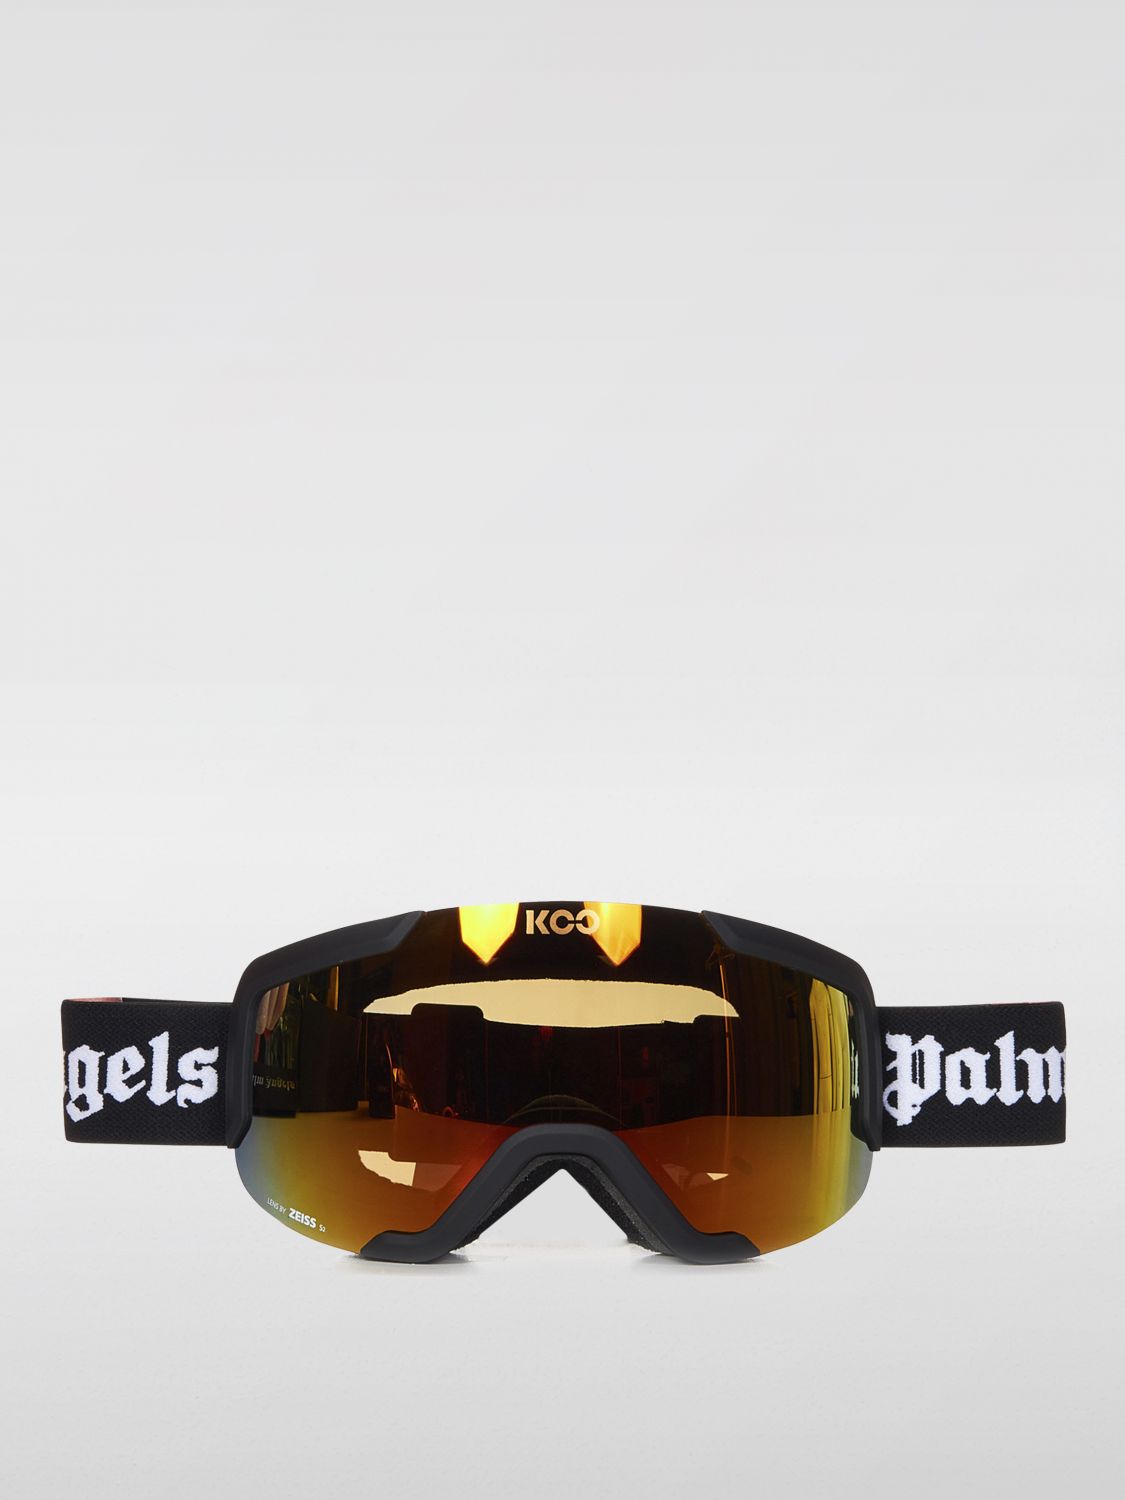 PALM ANGELS Sunglasses PALM ANGELS Men color Black